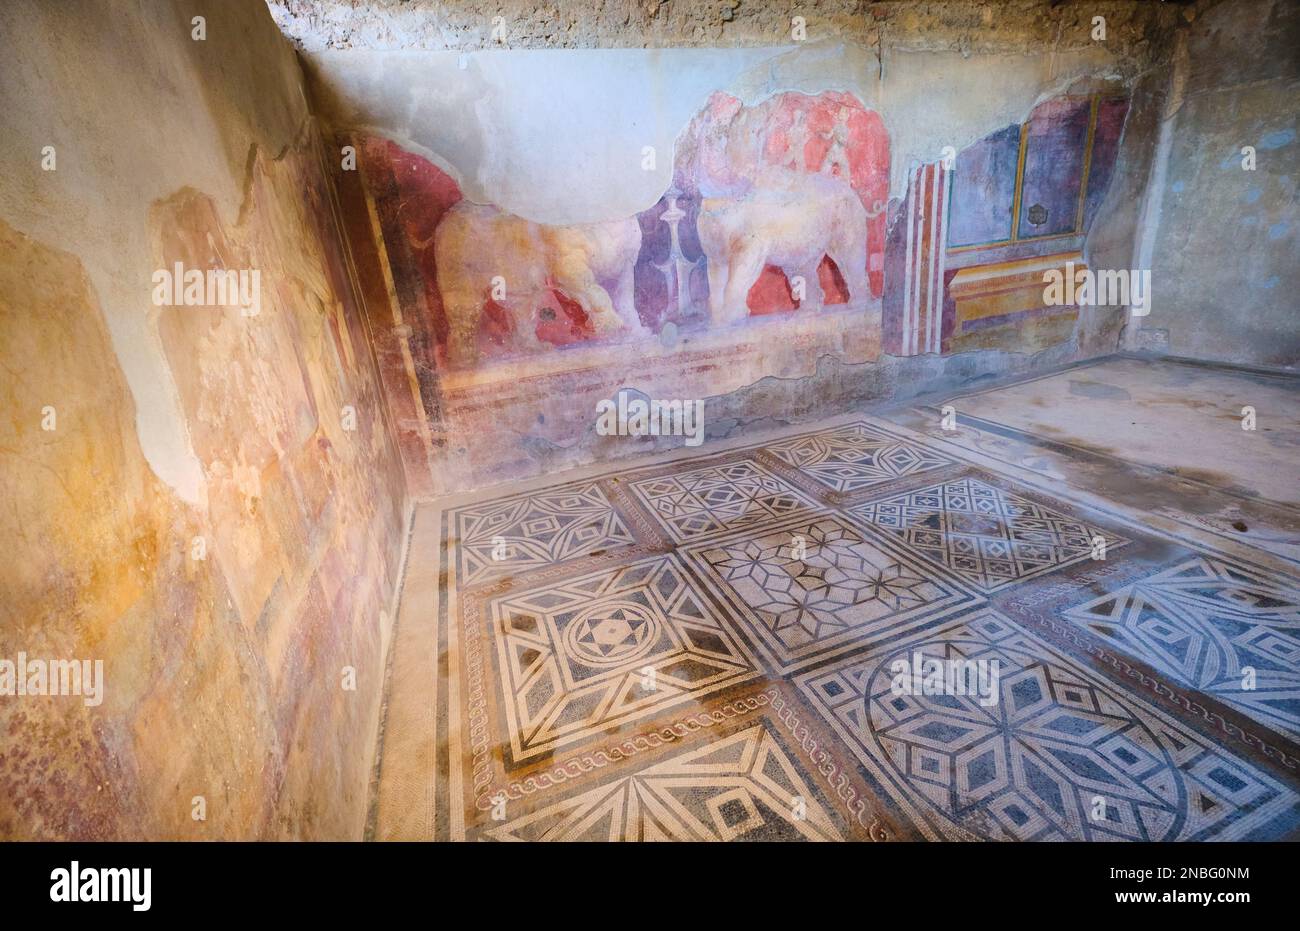 Elaborados, ricos, elegantes frescos de pared y mosaico de piso, trabajos de azulejos en una gran sala en la Casa de Larario di Achille. En el Parque Arqueológico de Pompeya cerca de Naple Foto de stock